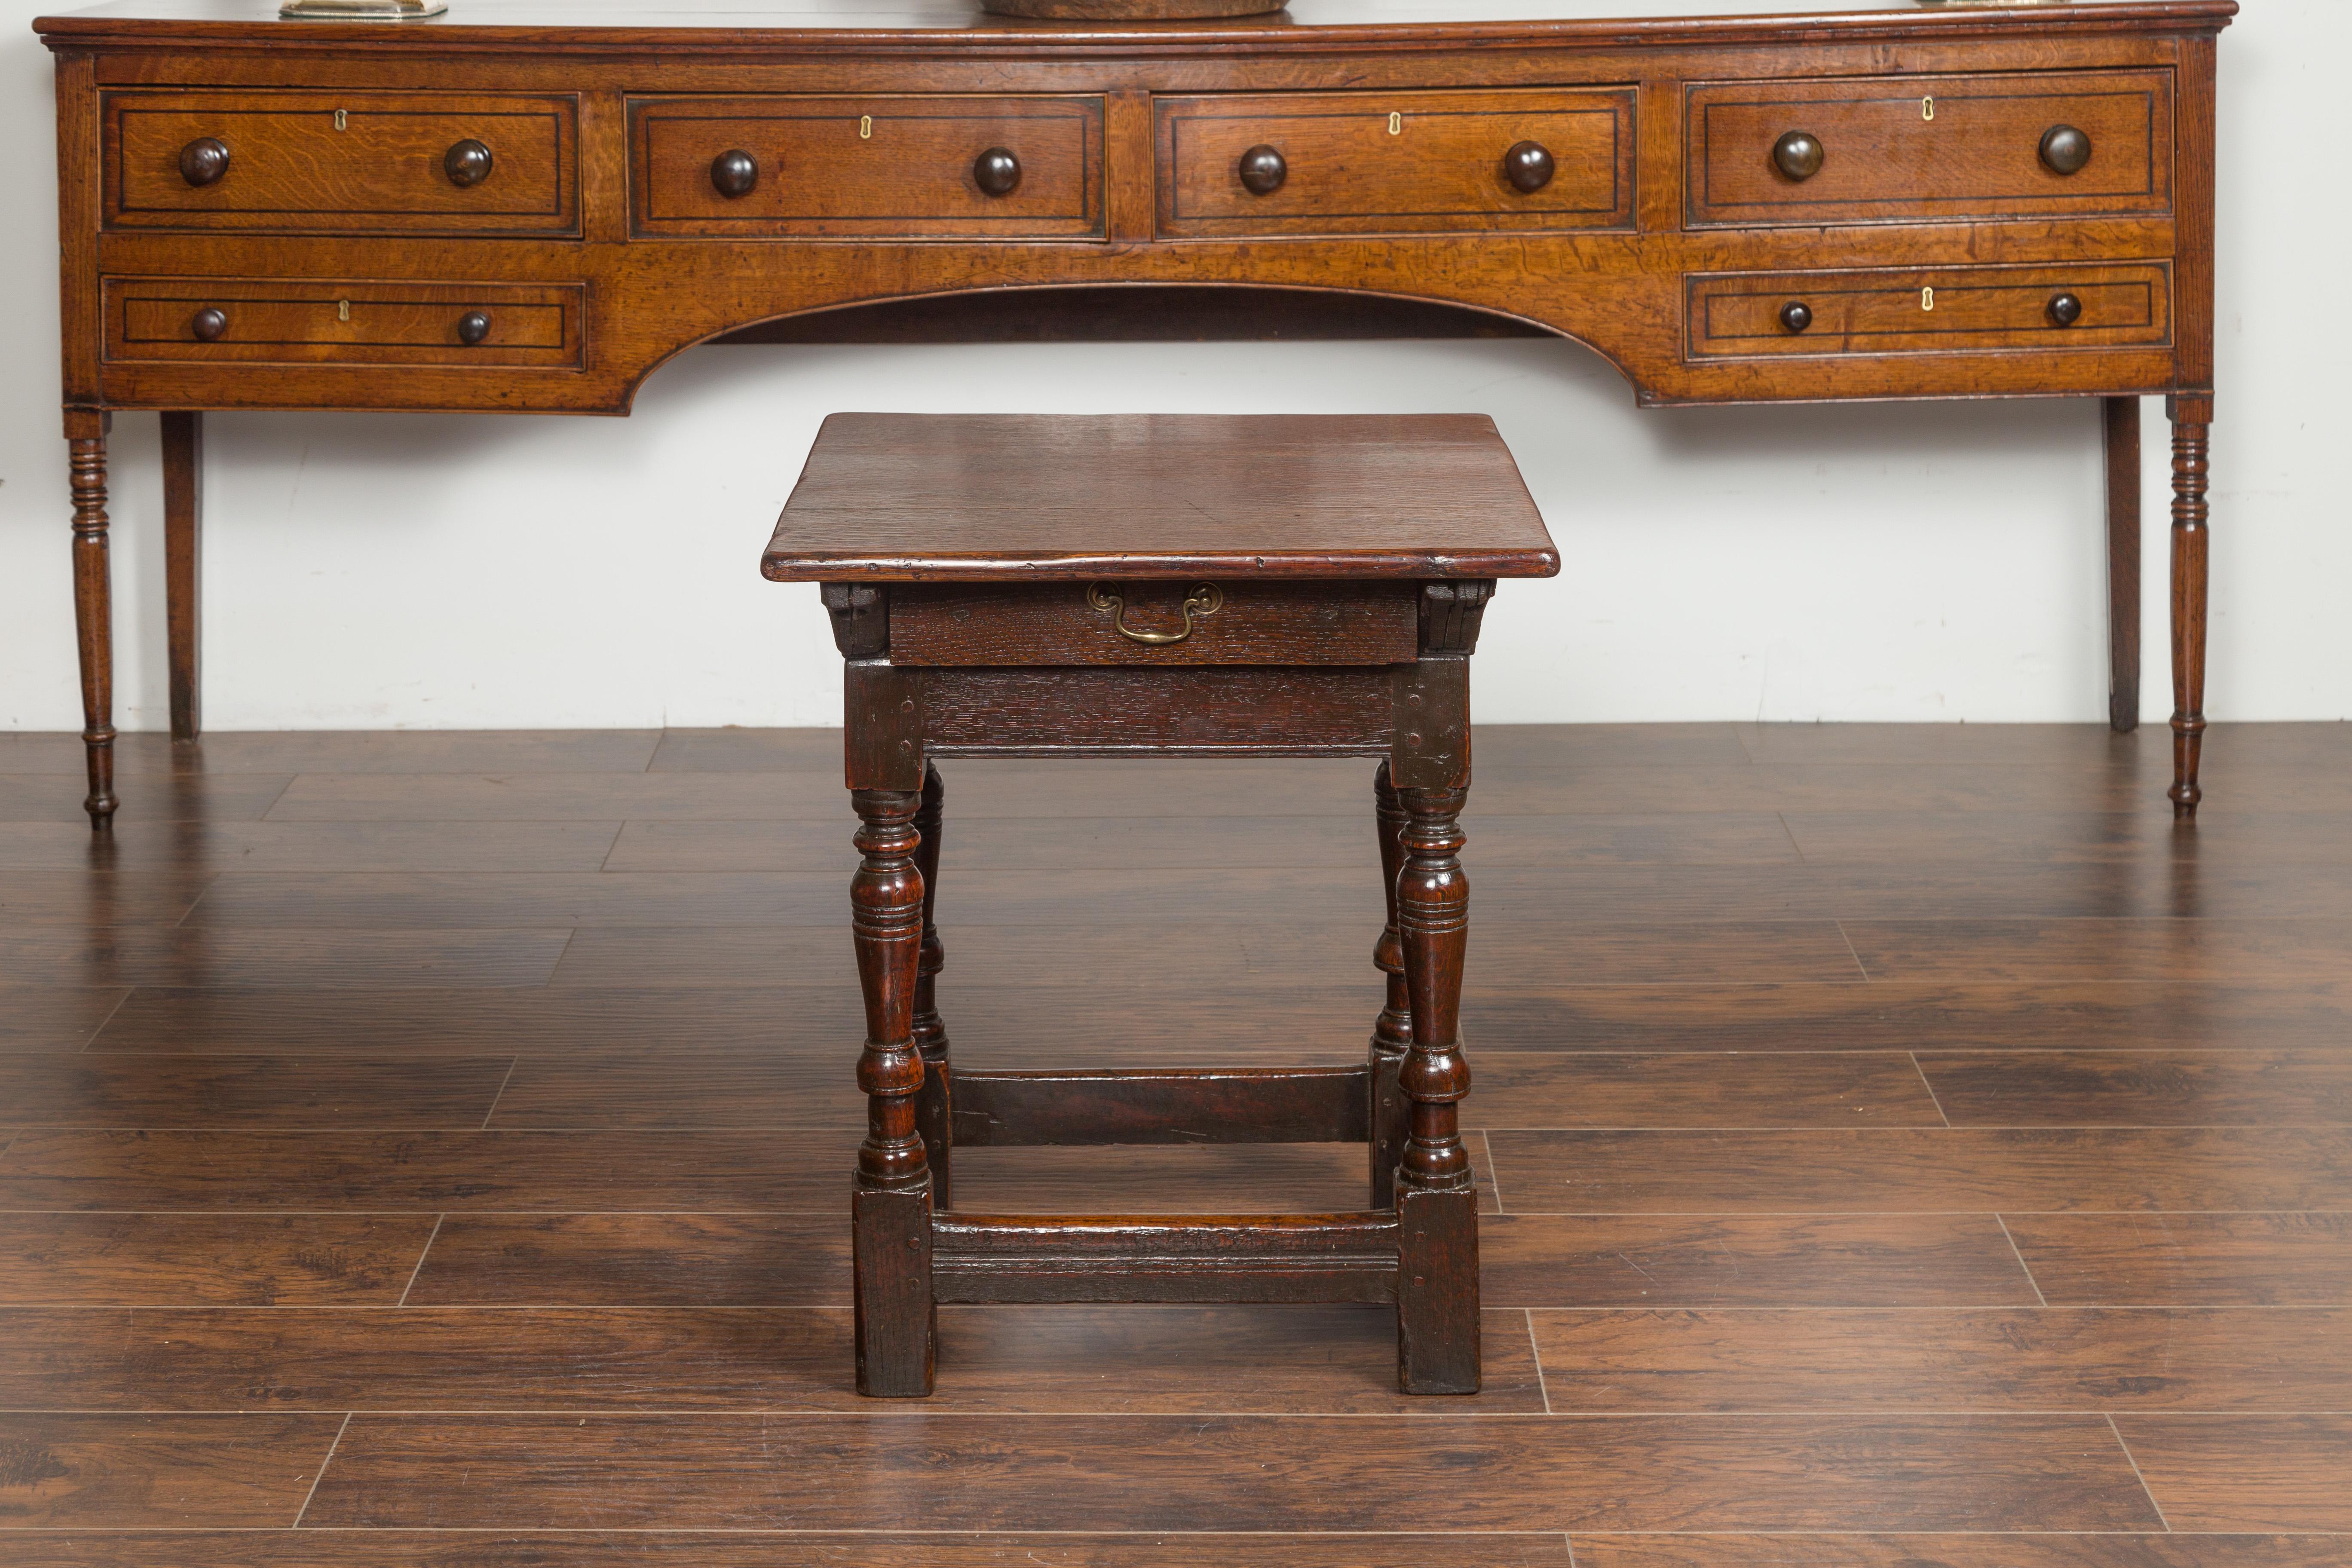 Table d'appoint en chêne d'époque géorgienne anglaise du début du 19e siècle, avec un seul tiroir, des pieds tournés et des traverses. Née en Angleterre au début du XIXe siècle, cette table d'appoint en chêne présente un plateau carré au-dessus d'un